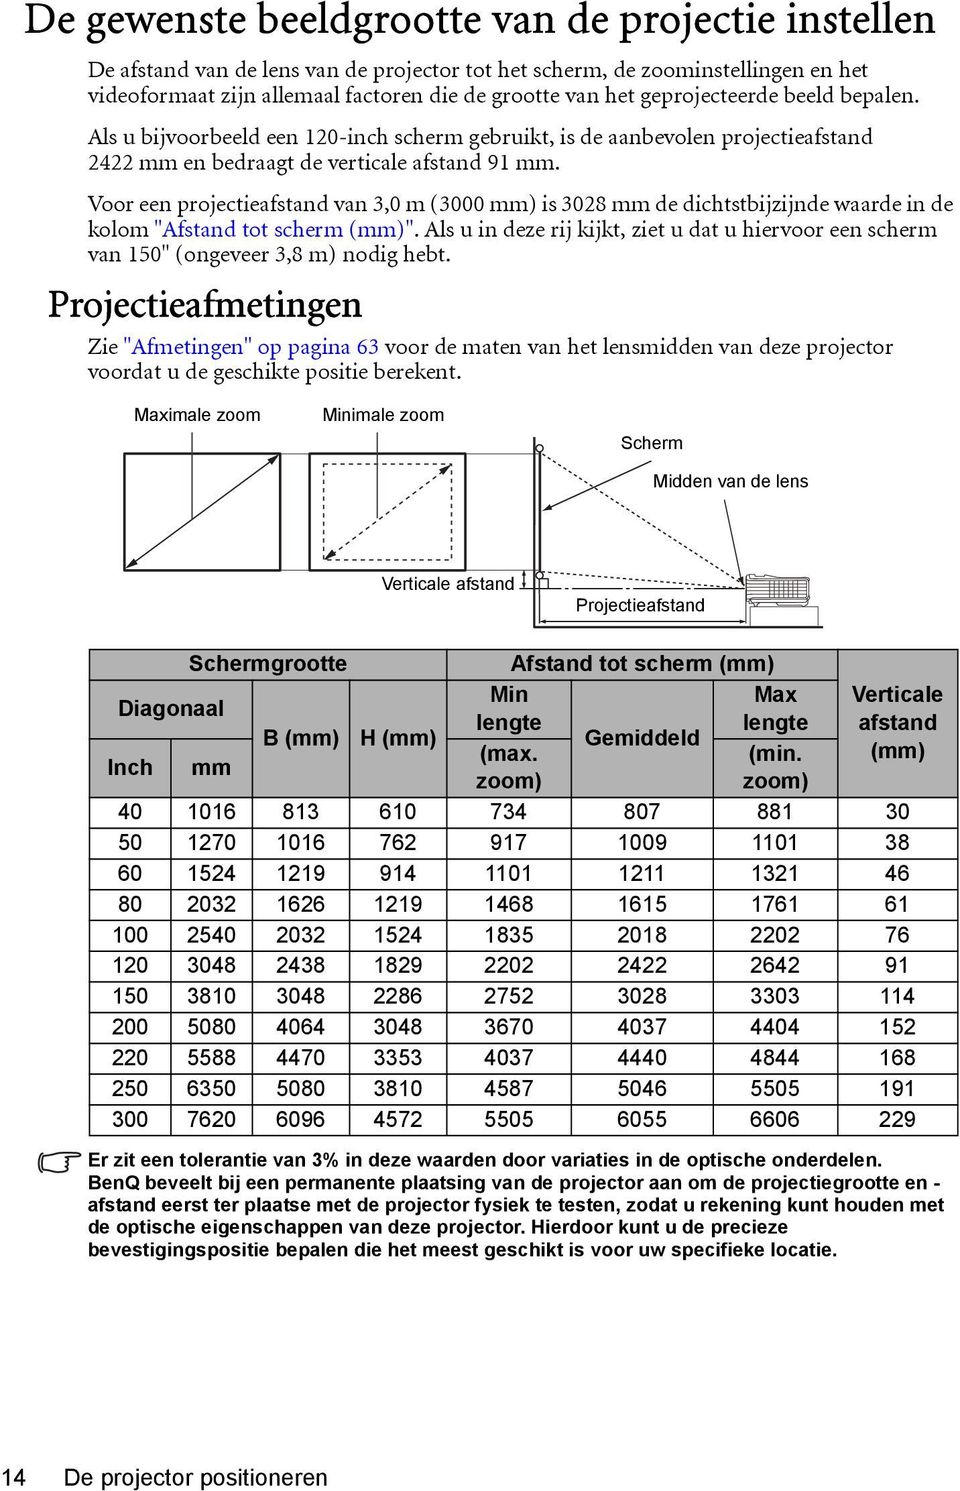 Voor een projectieafstand van 3,0 m (3000 mm) is 3028 mm de dichtstbijzijnde waarde in de kolom "Afstand tot scherm (mm)".